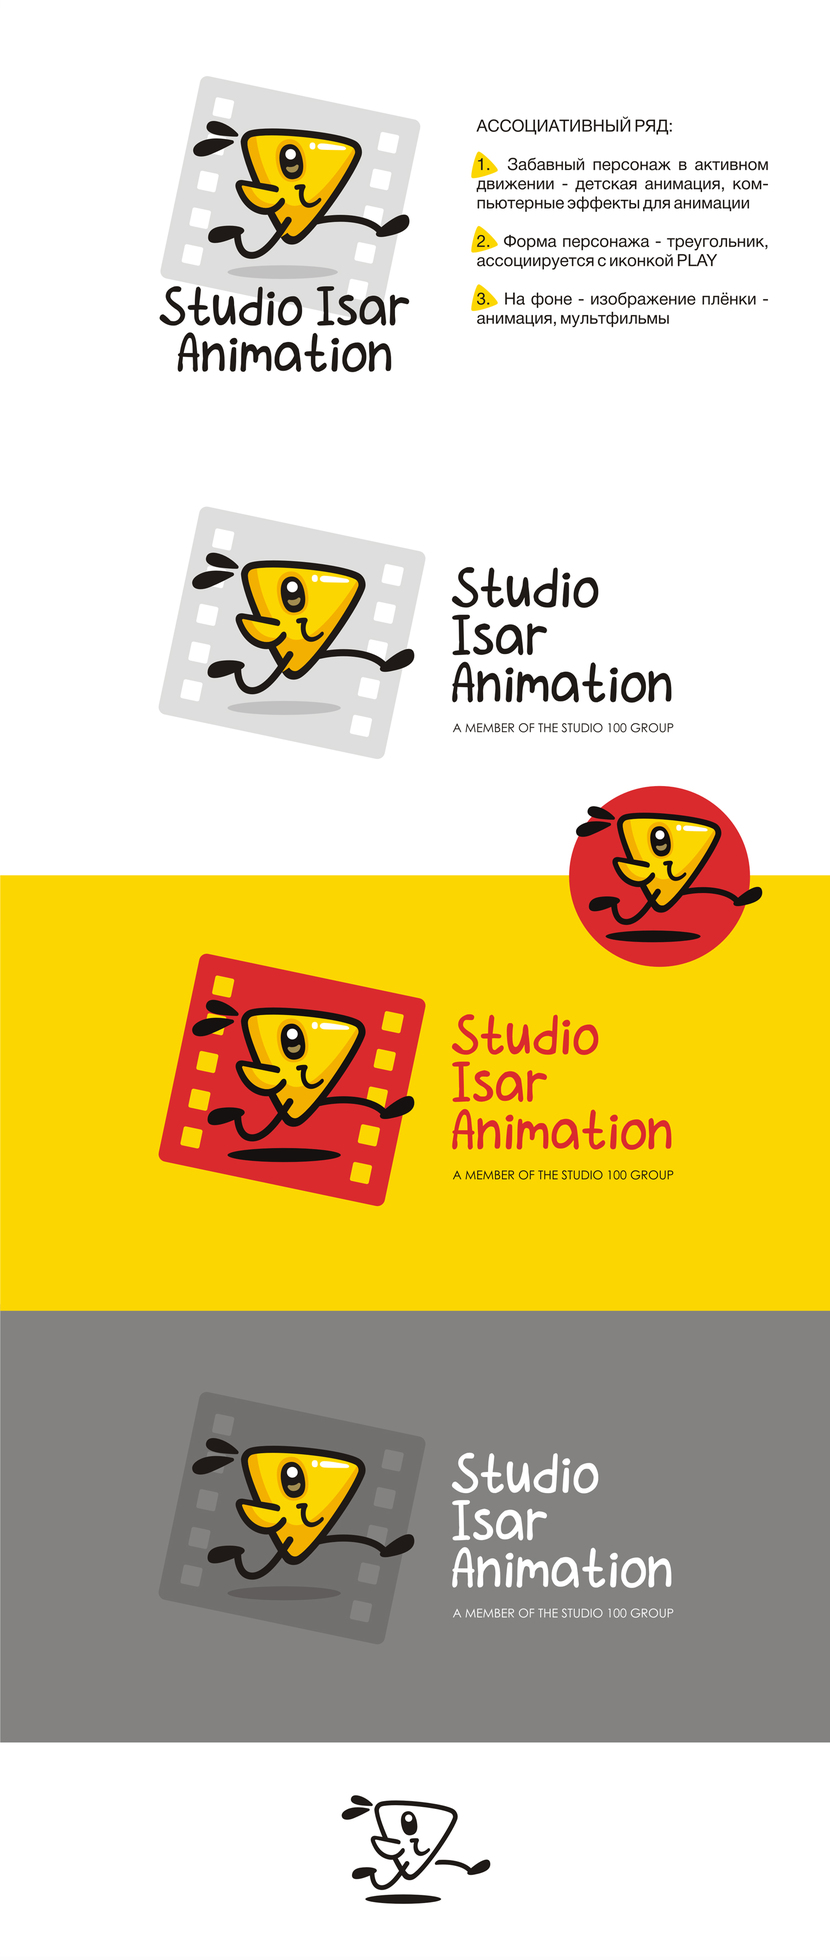 Логотип и фирменный стиль для студии мультипликации Studio Isar Animation  -  автор Марина Потаничева